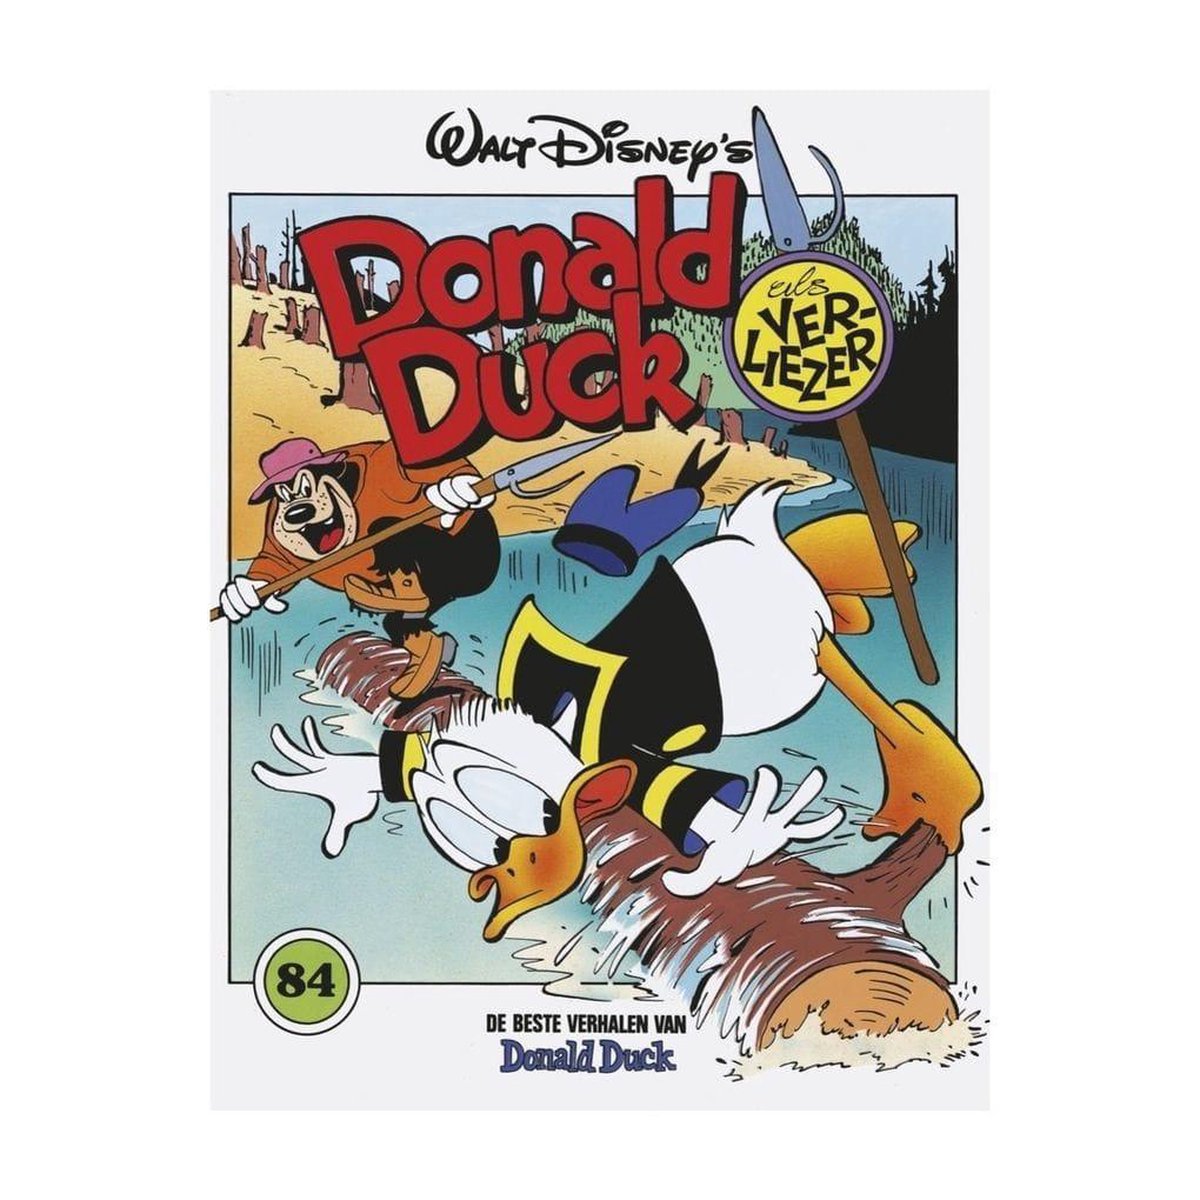 Donald Duck als verliezer / De beste verhalen van Donald Duck / 84